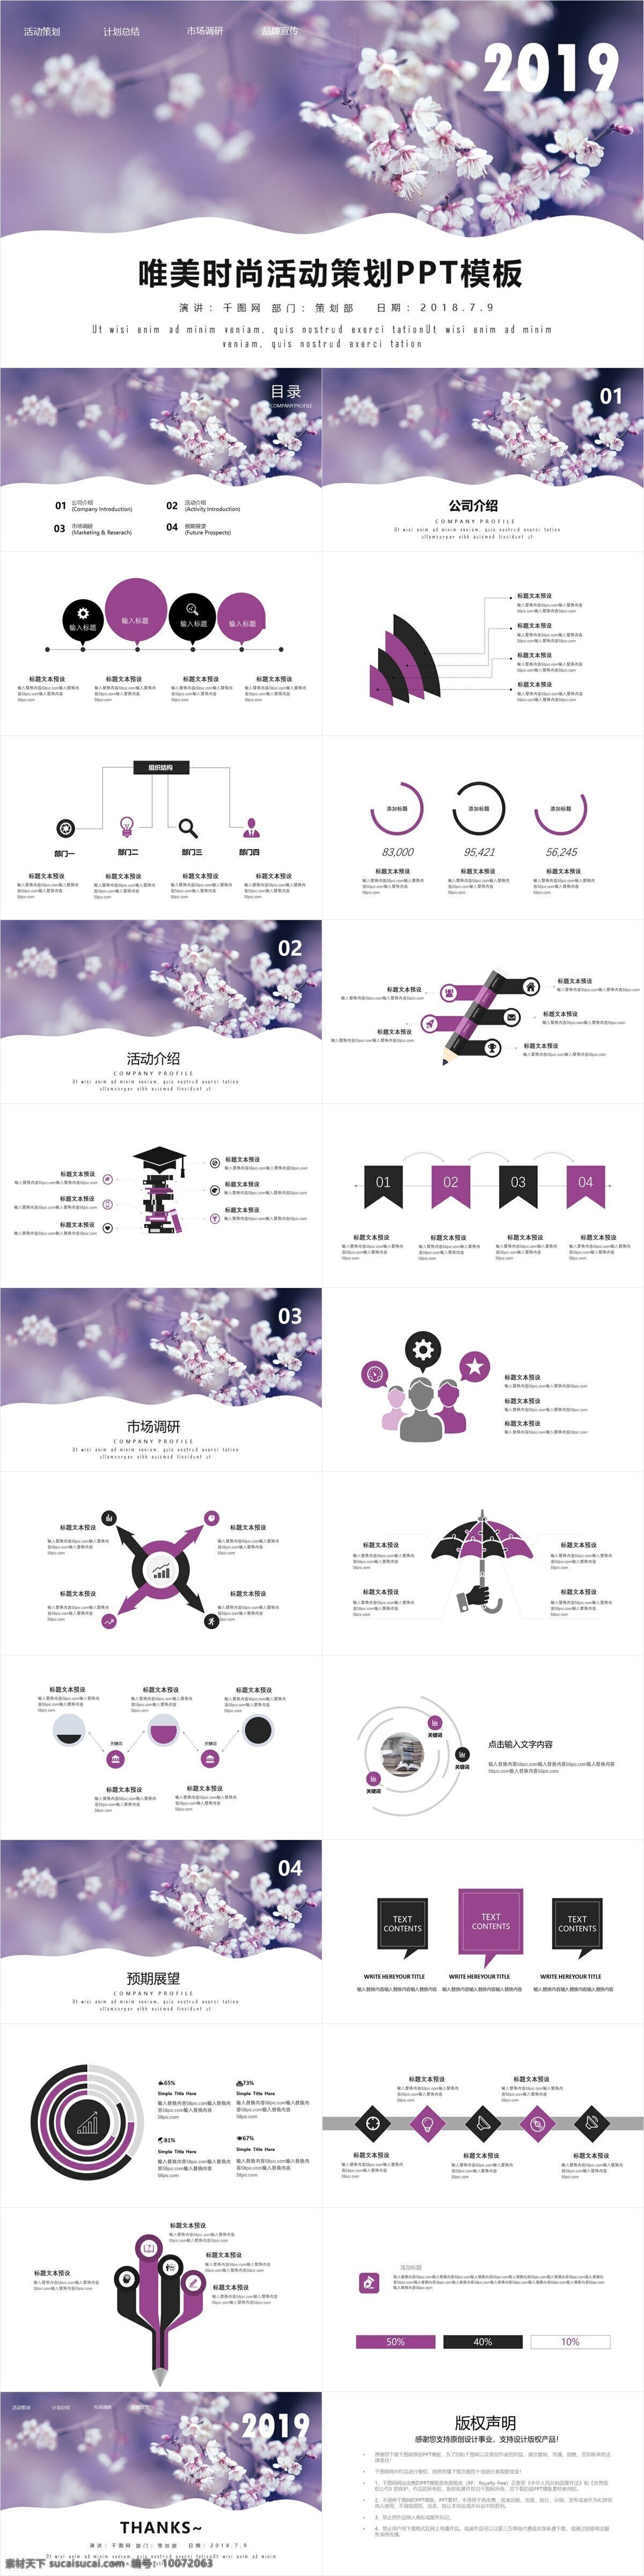 紫色 唯美 时尚 活动策划 模板 简约 营销 宣传 推广 活动组织方案 方案策划 营销策划 商业策划 活动宣传 策划